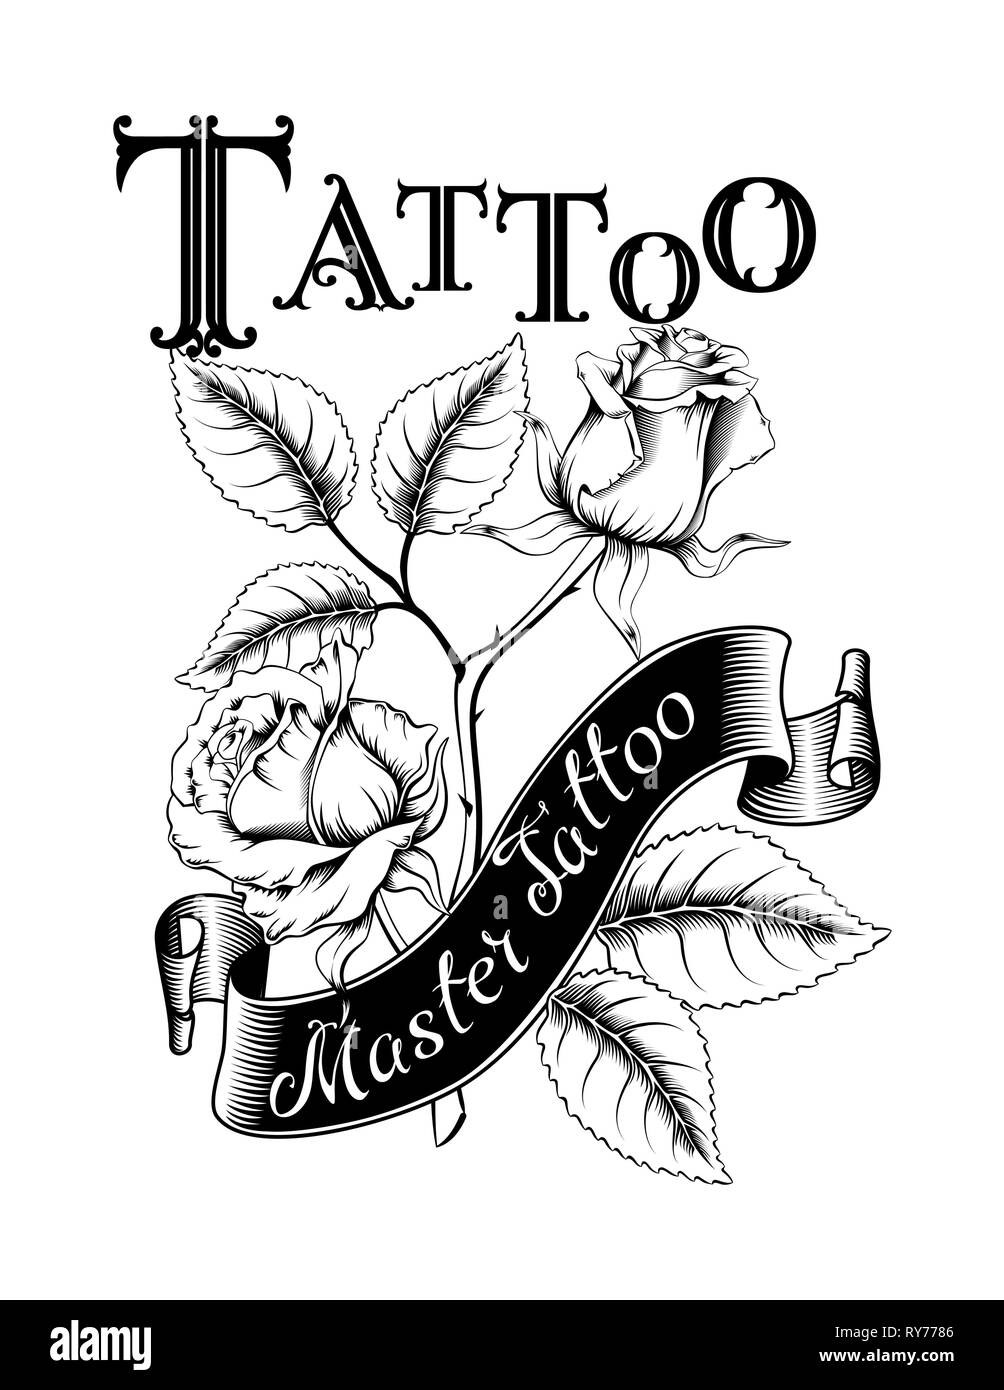 Hand drawn vector illustration du logo tatouage avec des roses et des feuilles. Idéal pour des invitations, cartes de vœux, des citations, des tatouages, des textiles, des blogs, des affiches, Illustration de Vecteur